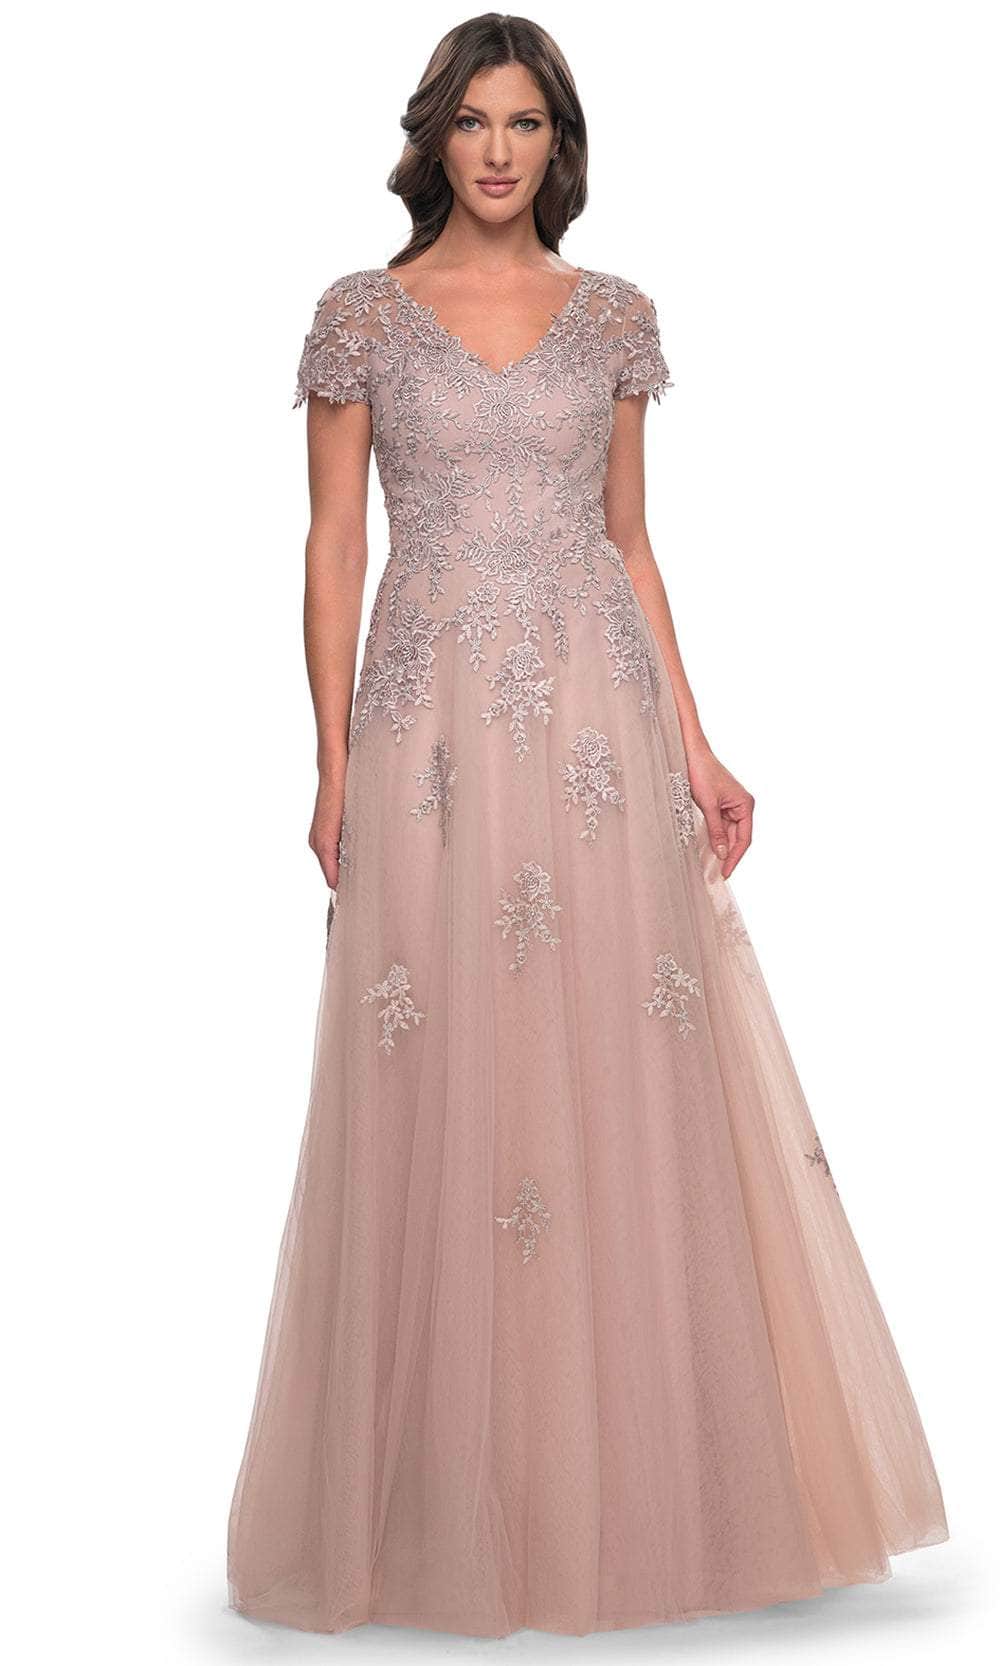 La Femme 30228 - Embroidered A-Line Formal Dress Evening Dresses 4 / Mauve